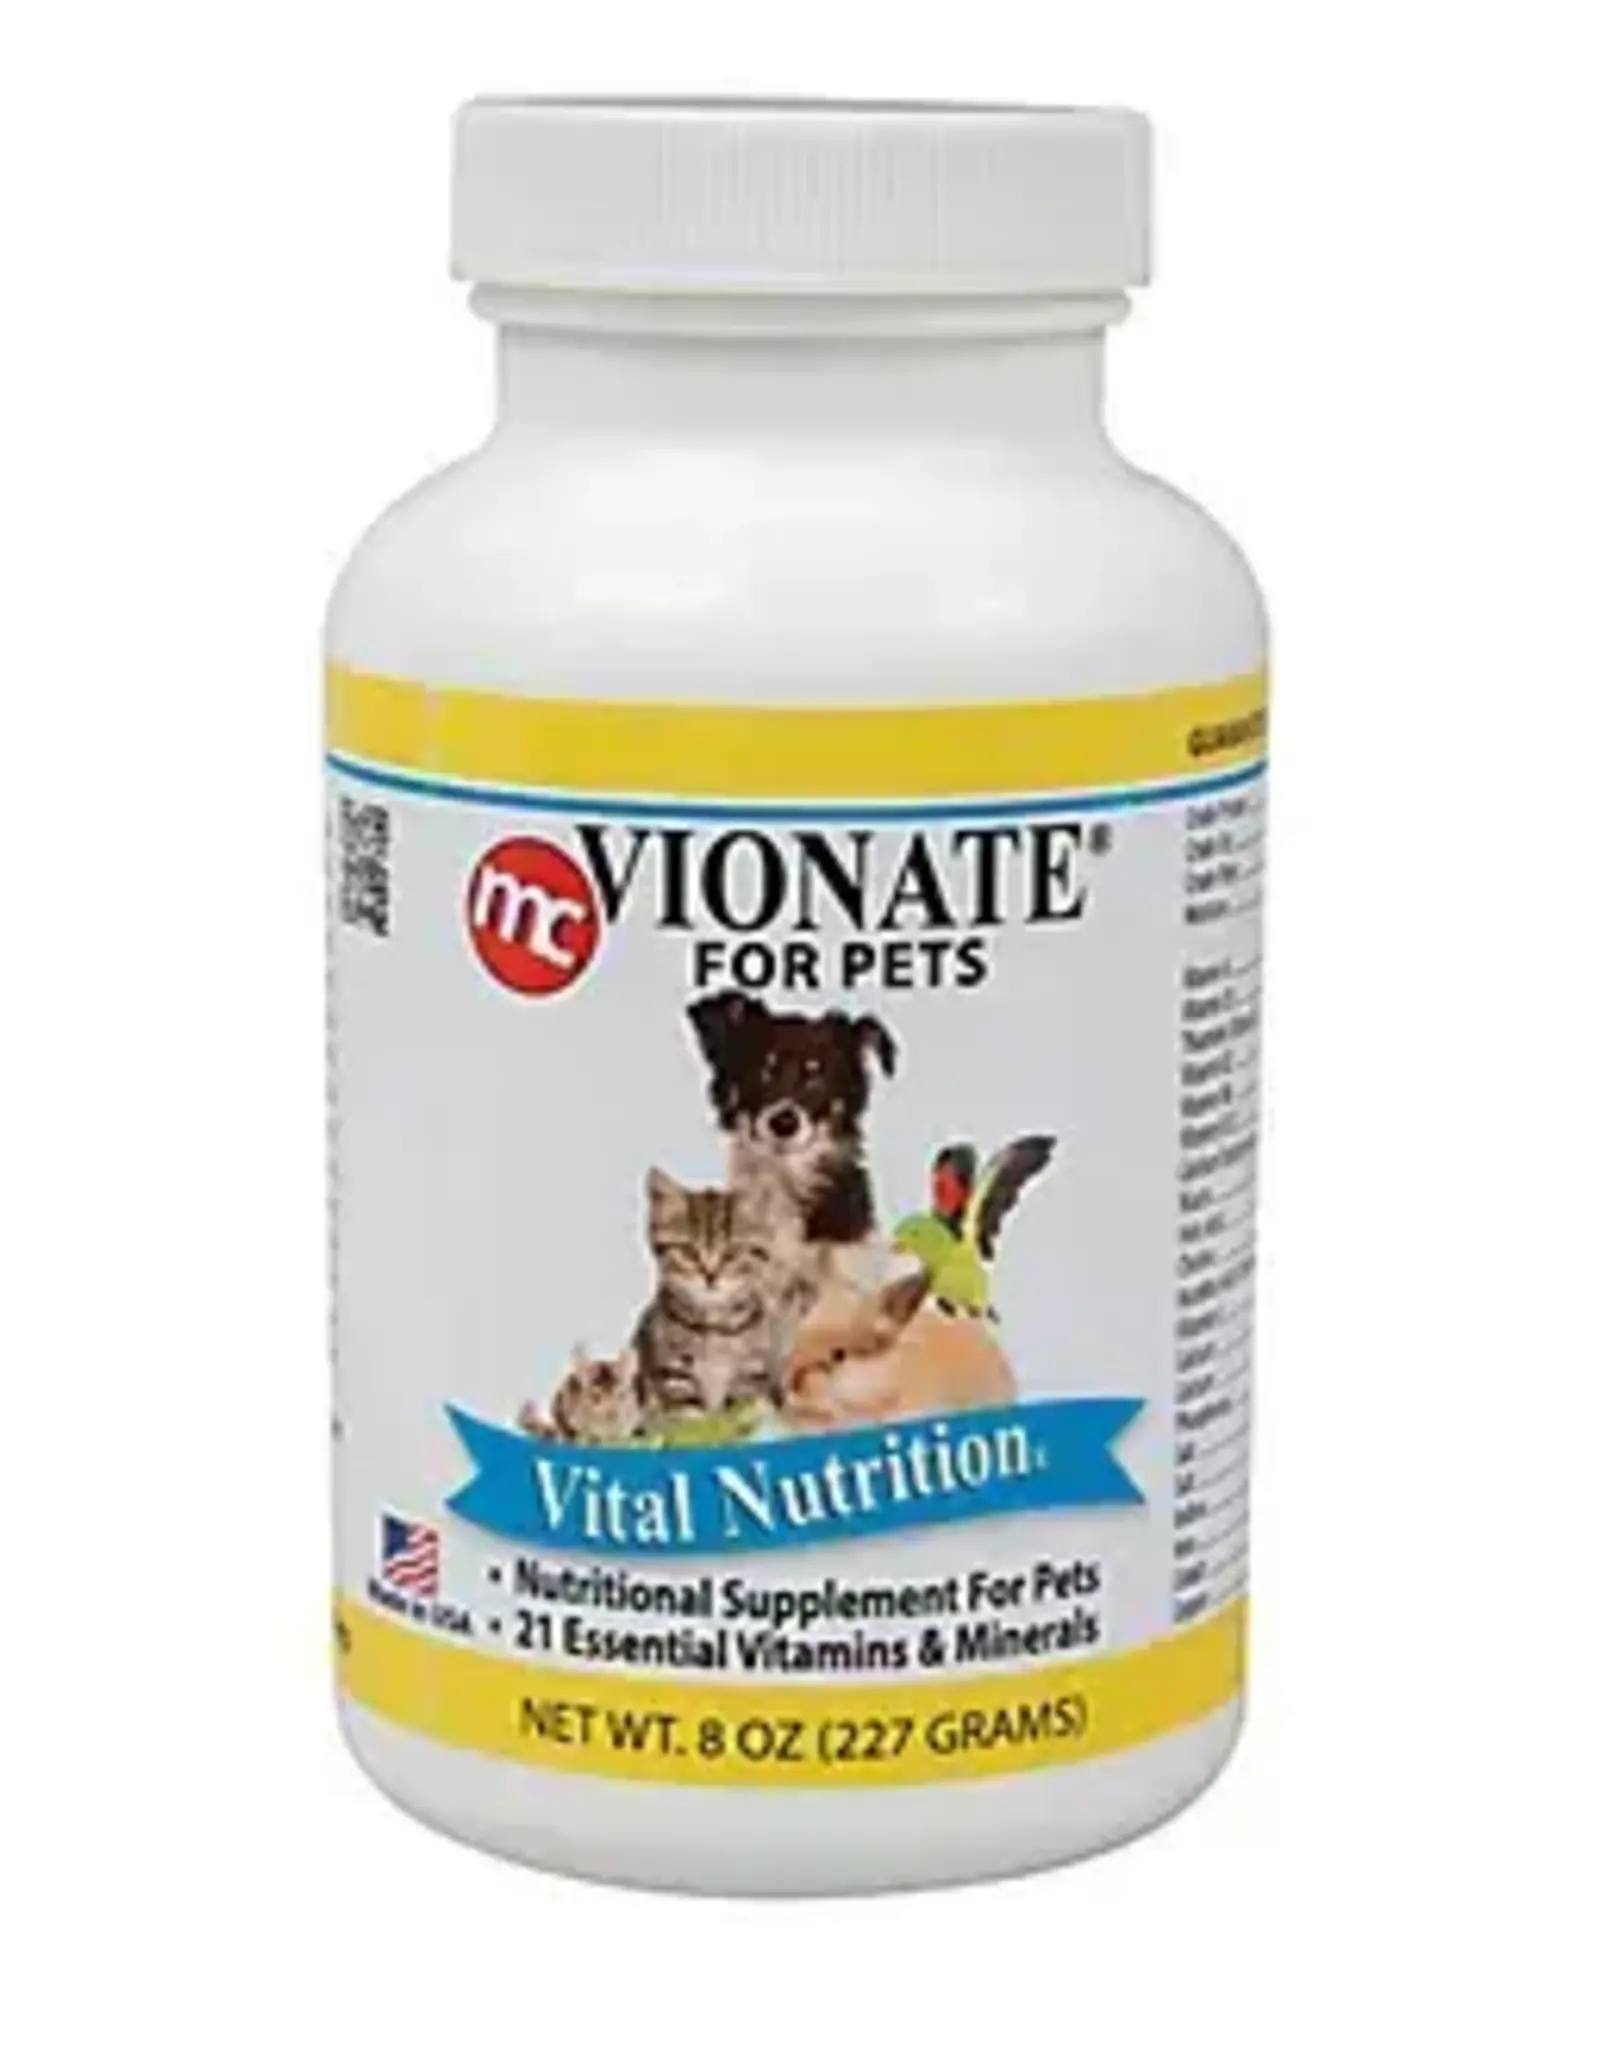 VIONATE- NUTRITION SUPPLEMENT- 4X4X6- VITAMIN MINERAL P0WDER 8 OZ